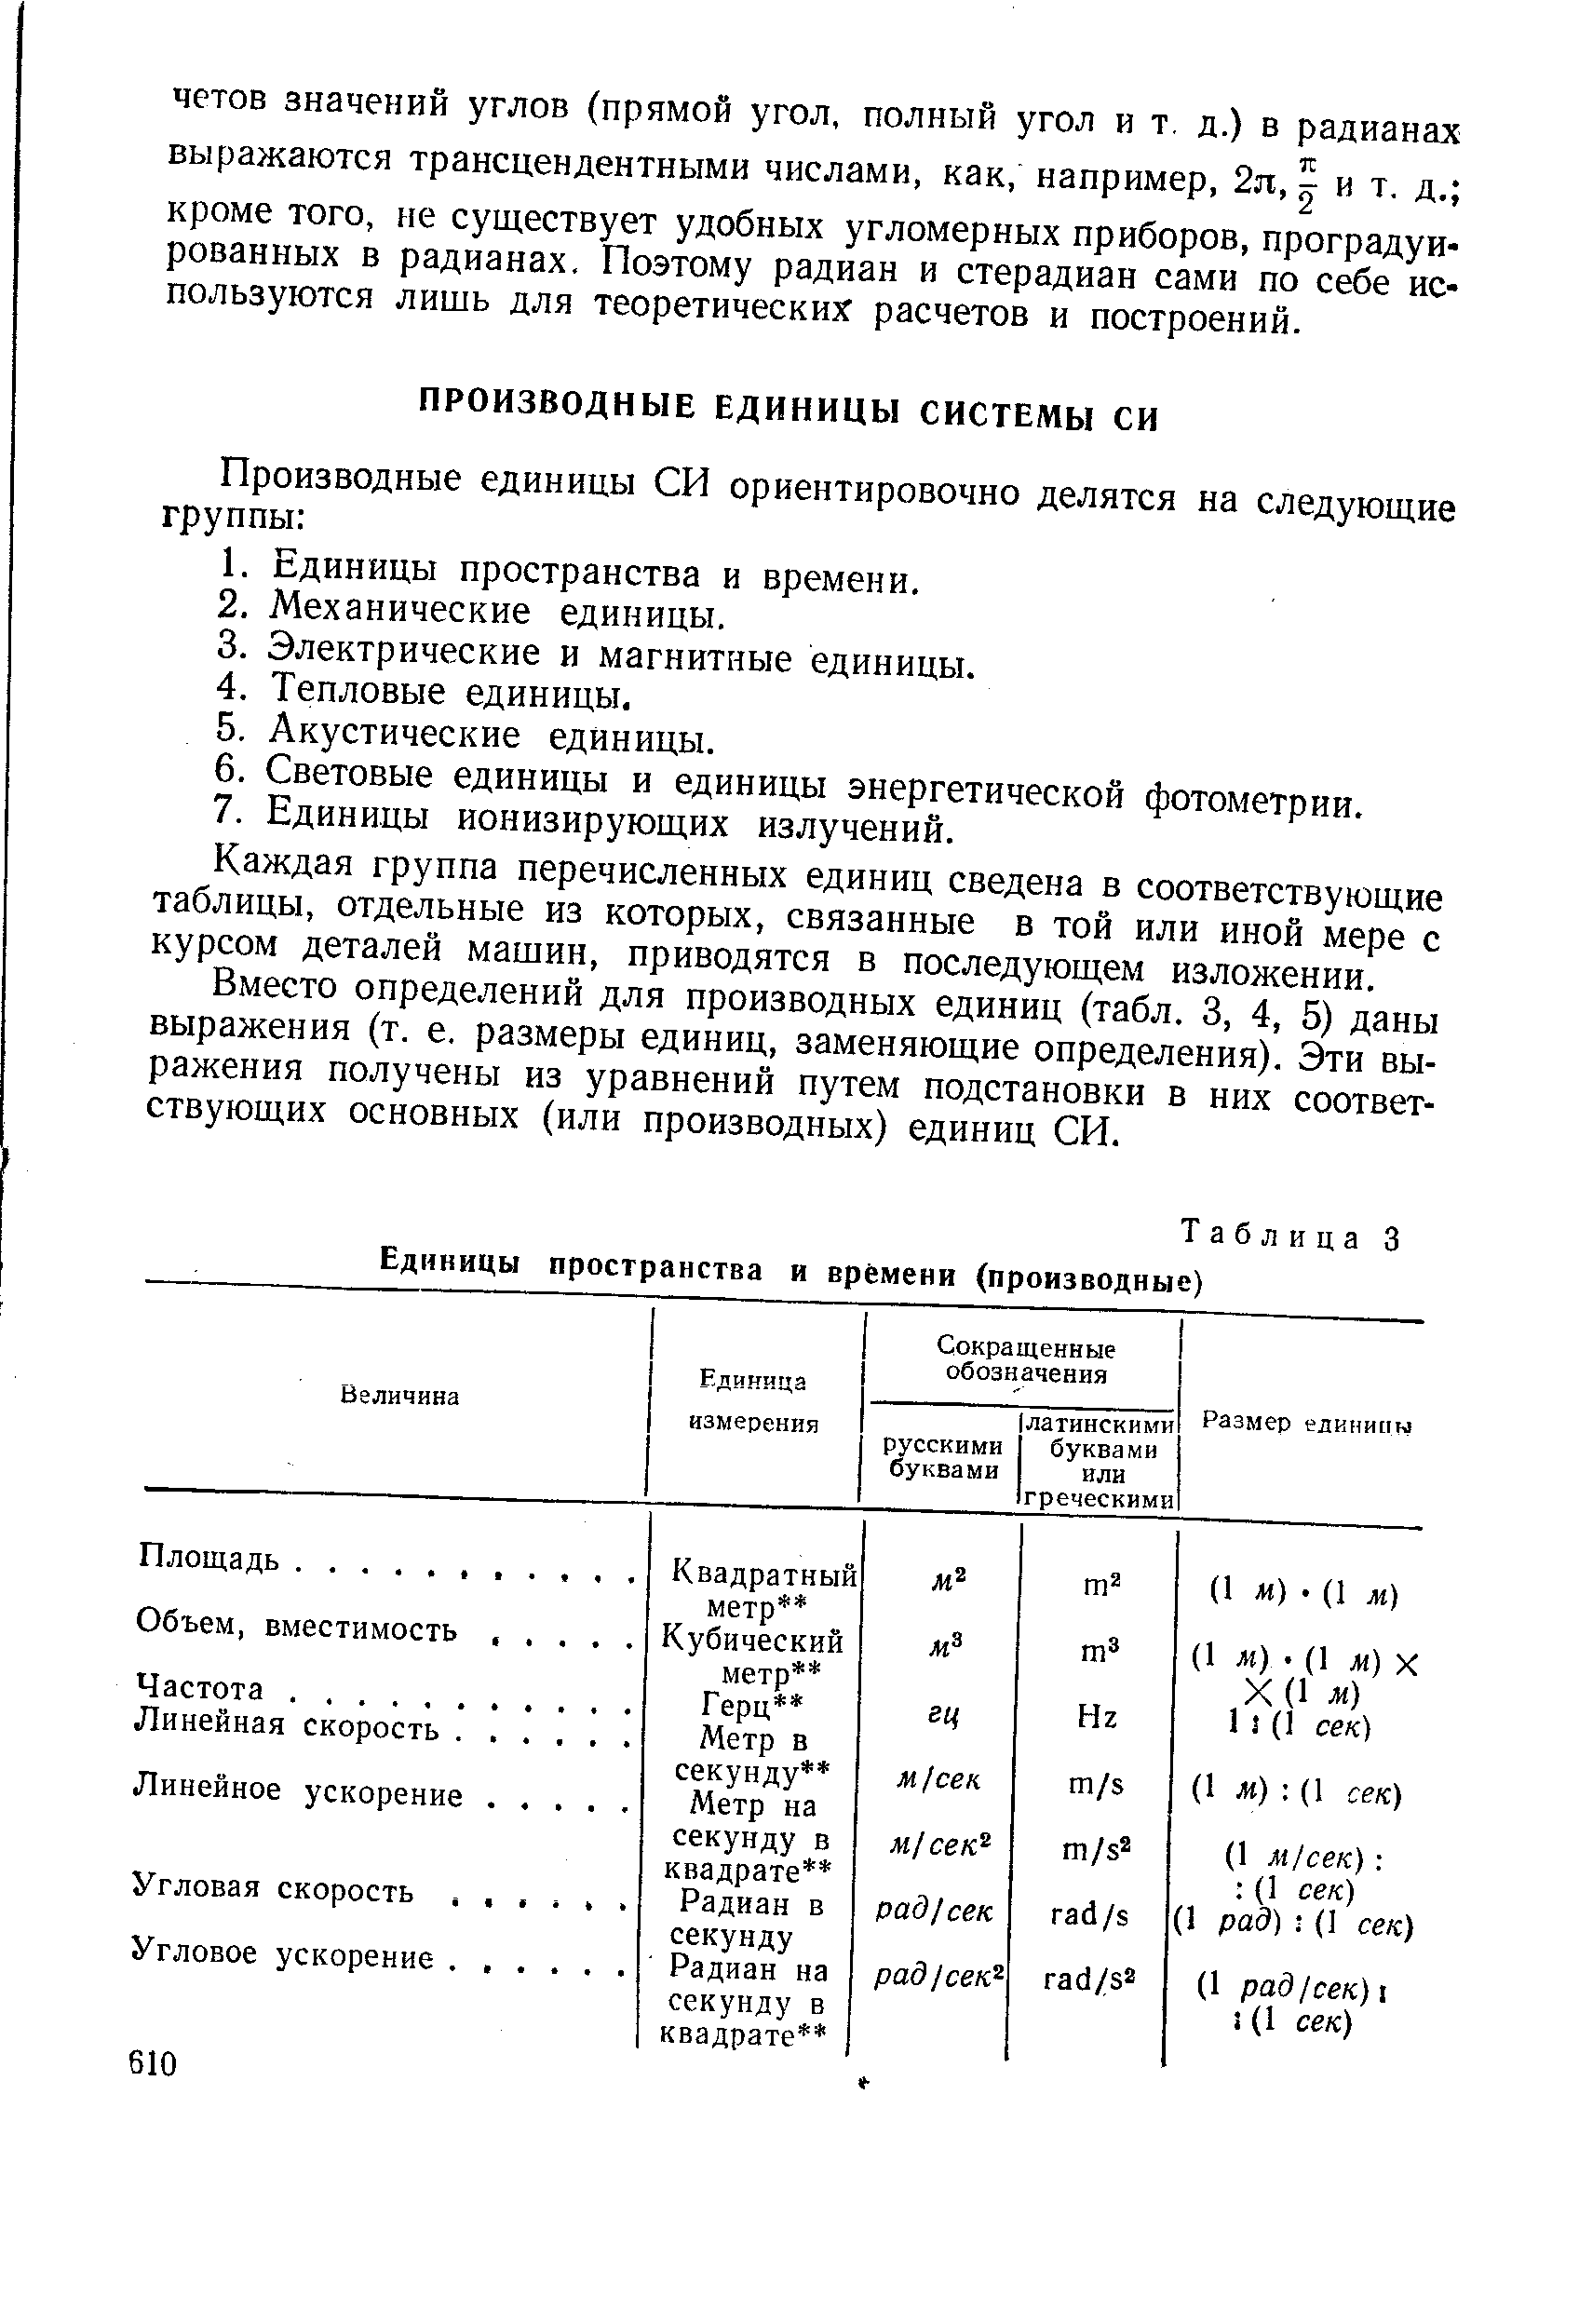 Таблица 3 Единицы пространства и времени (производные)
